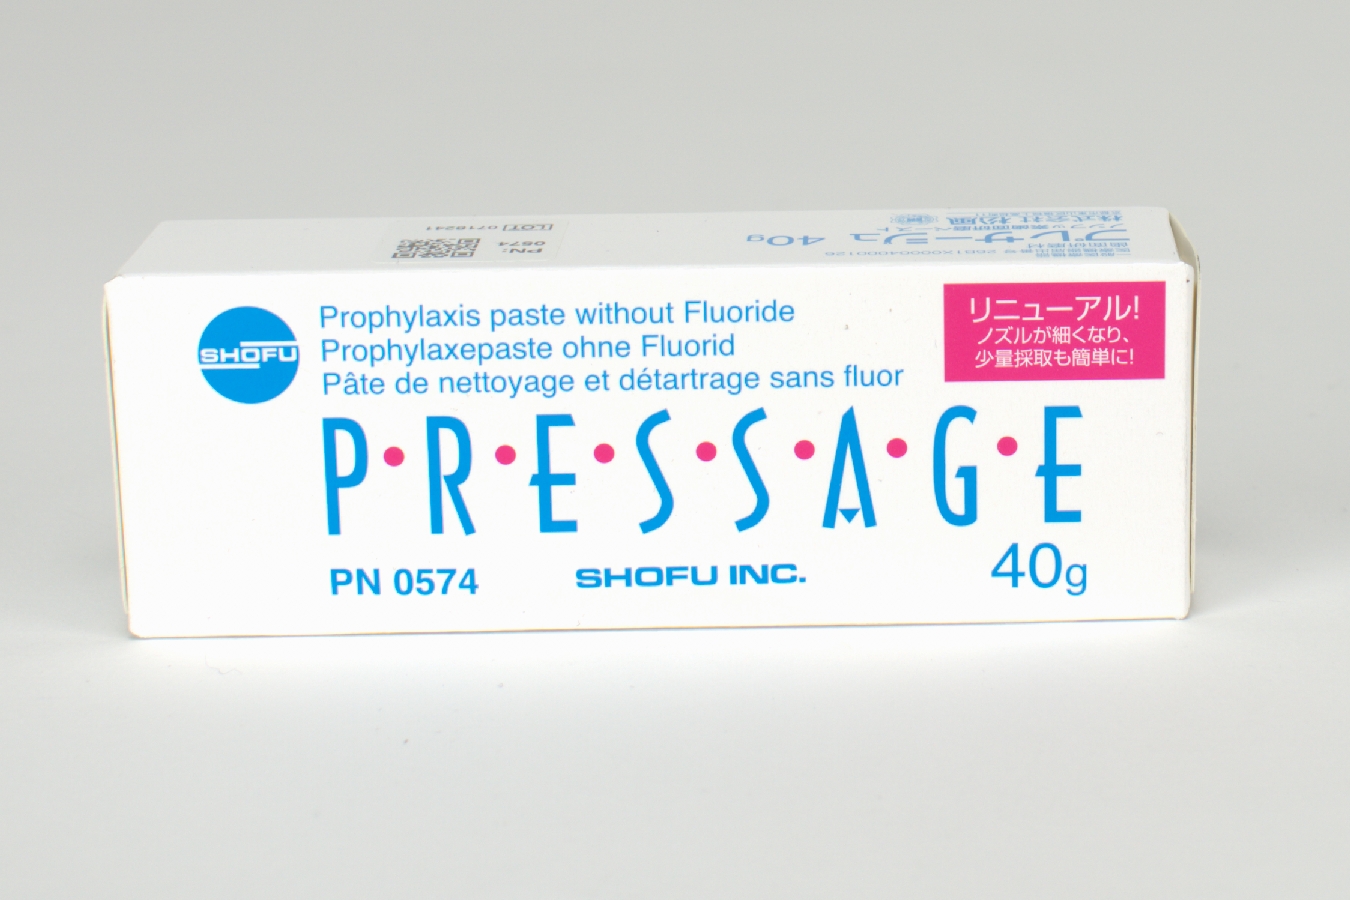 Pressage Prophy-Paste 40gr Tube 